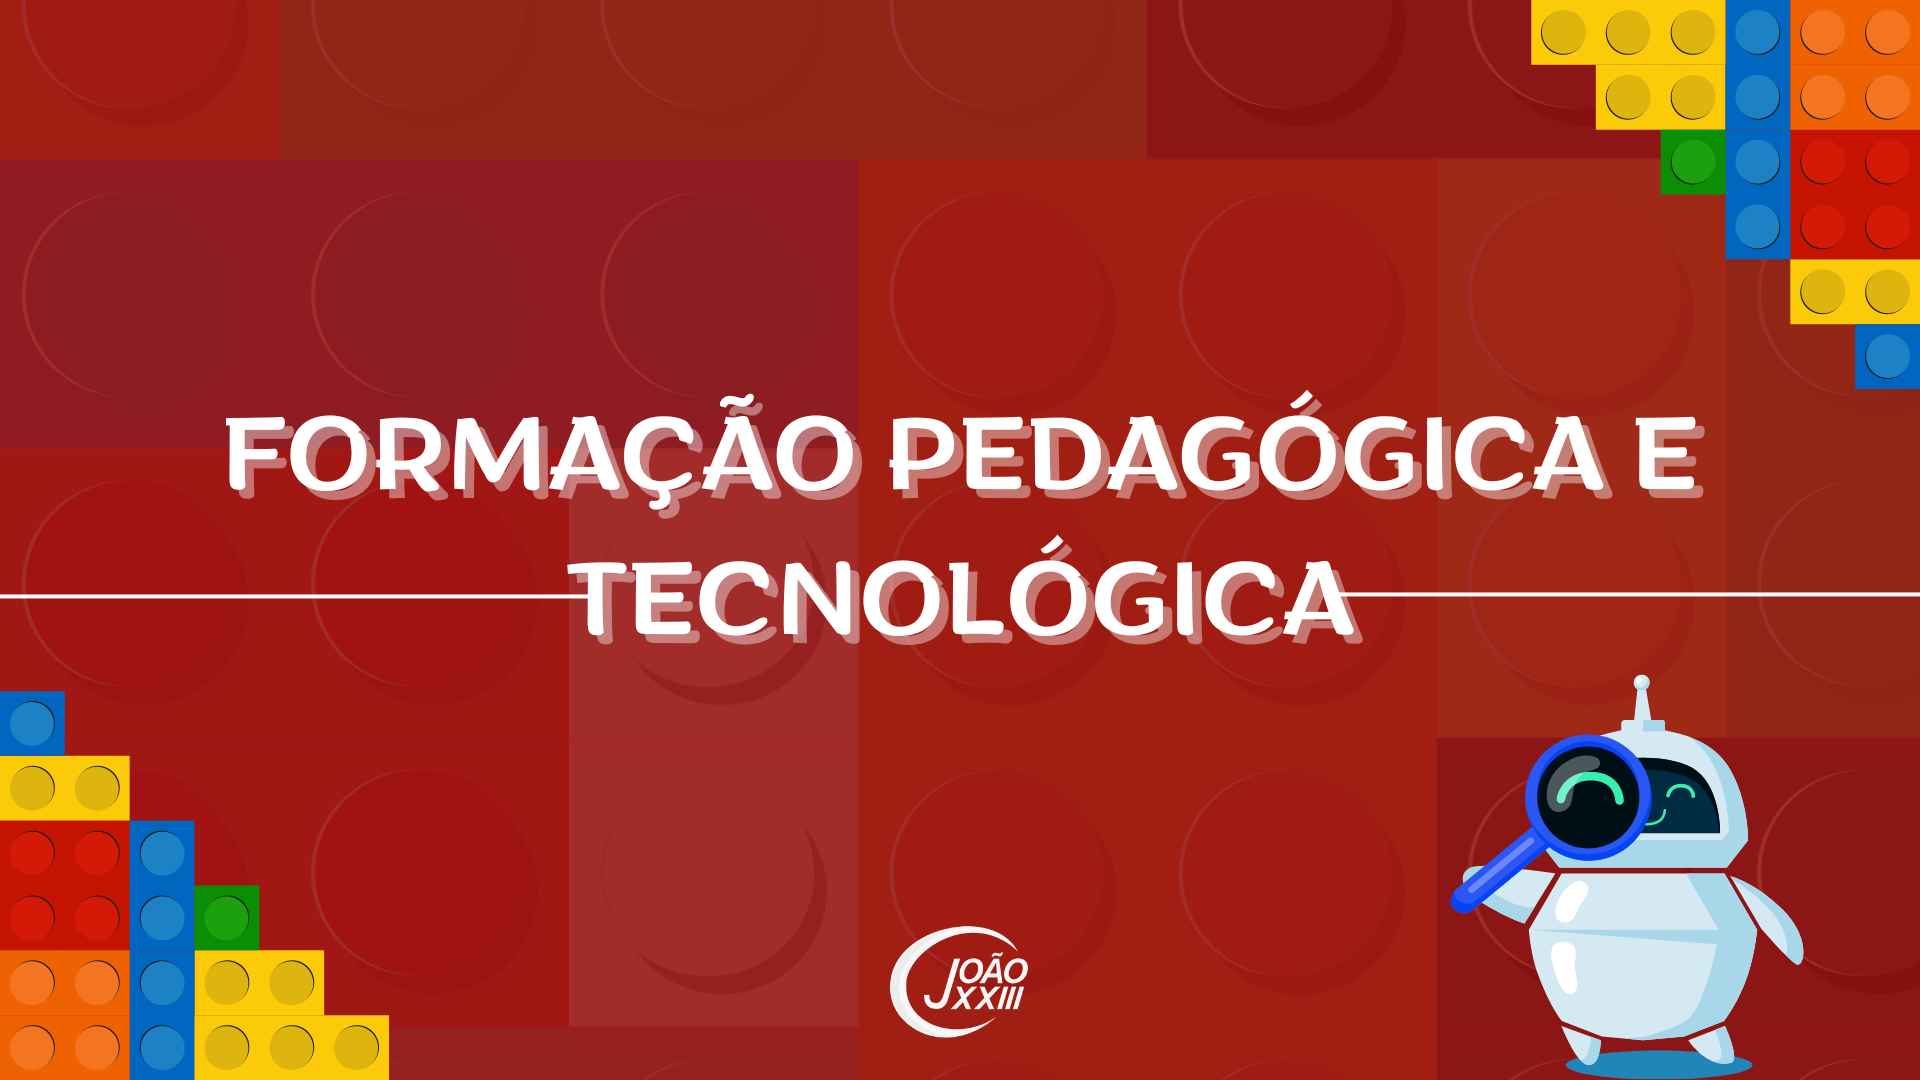 You are currently viewing Formação Pedagógica e Tecnológica